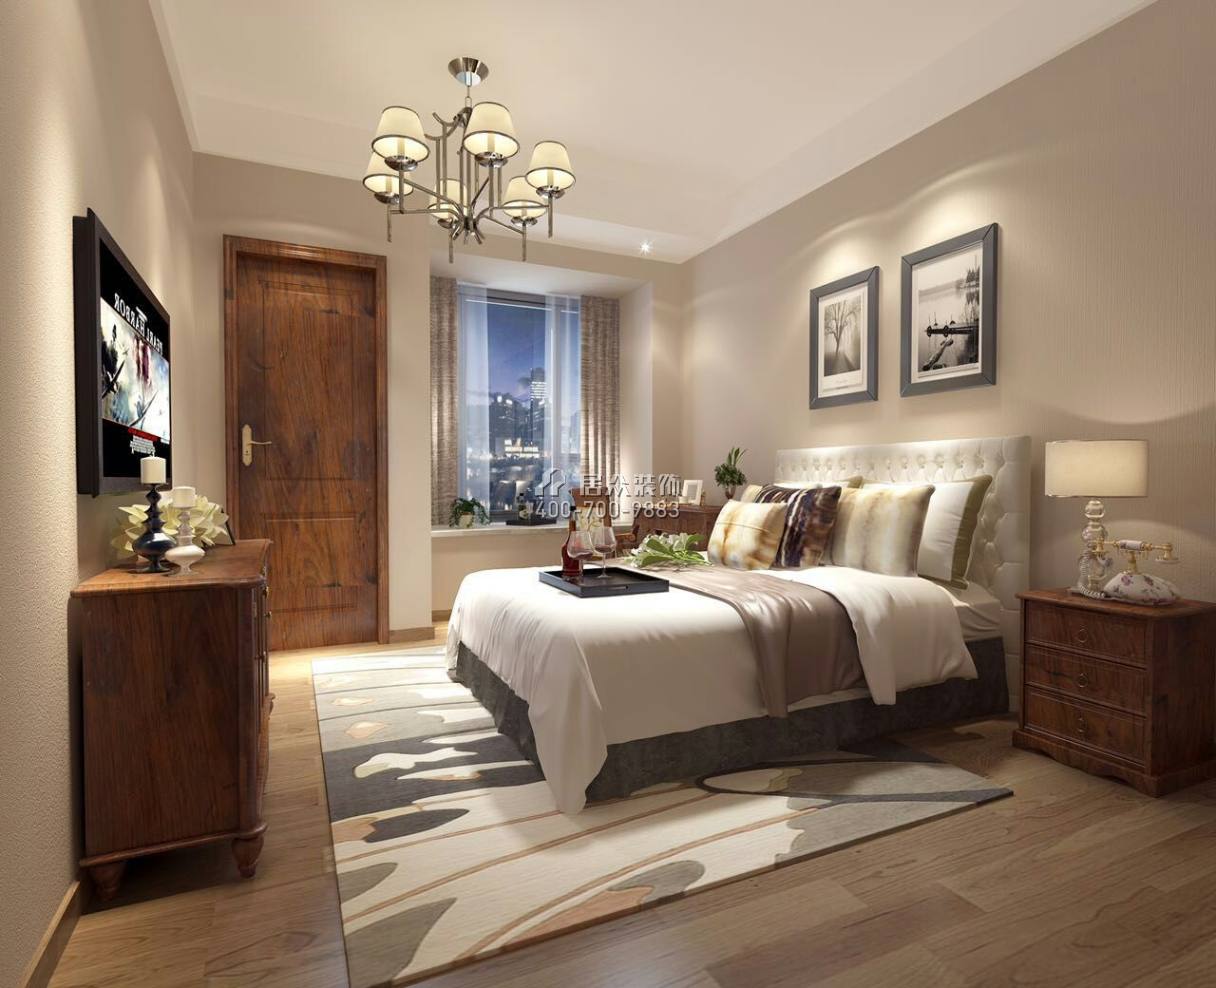 雅居乐剑桥郡247平方米现代简约风格平层户型卧室装修效果图